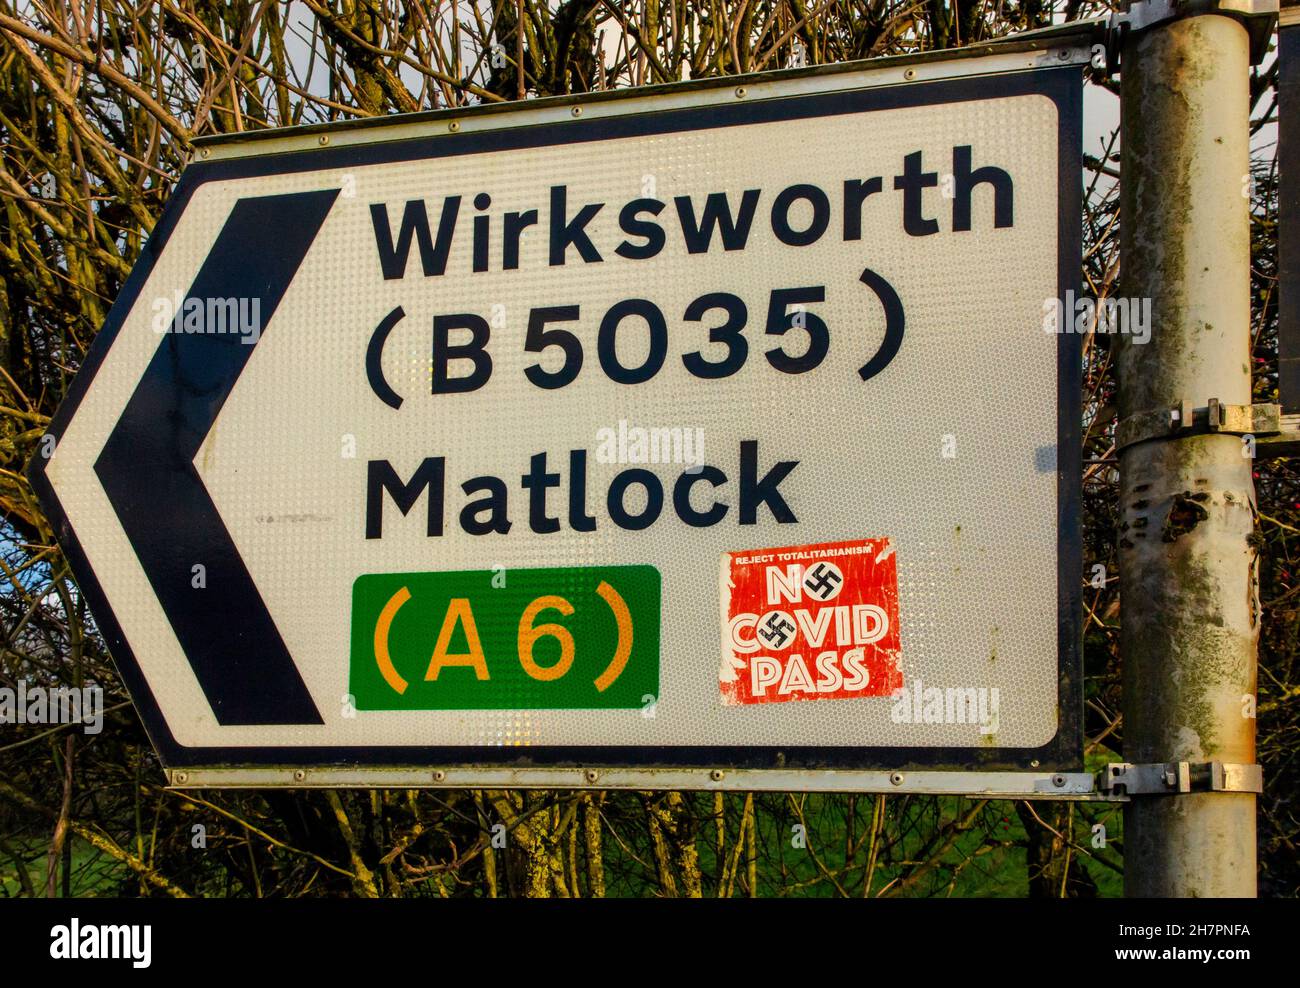 Kein Covid Pass-Aufkleber mit Hakenkreuz auf einem Straßenschild in der Nähe von Matlock im Derbyshire Peak District England Großbritannien während der Coronavirus-Pandemie von 2021. Stockfoto